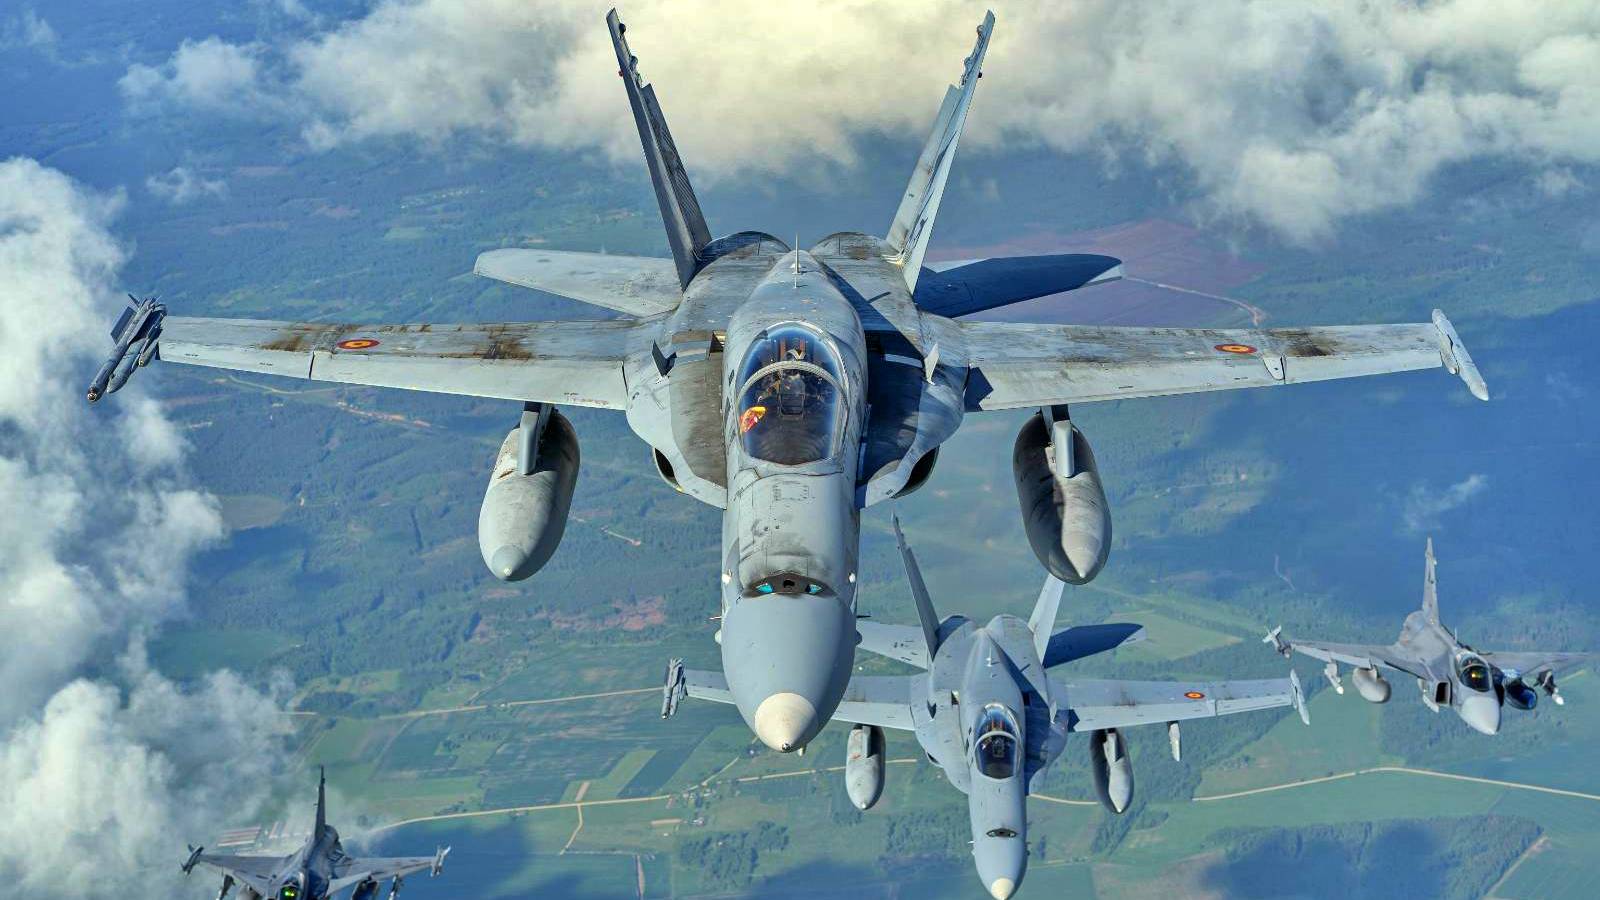 Fortele Aeriene Romane au Interceptat un Avion in Urma unei Alerte cu Bomba